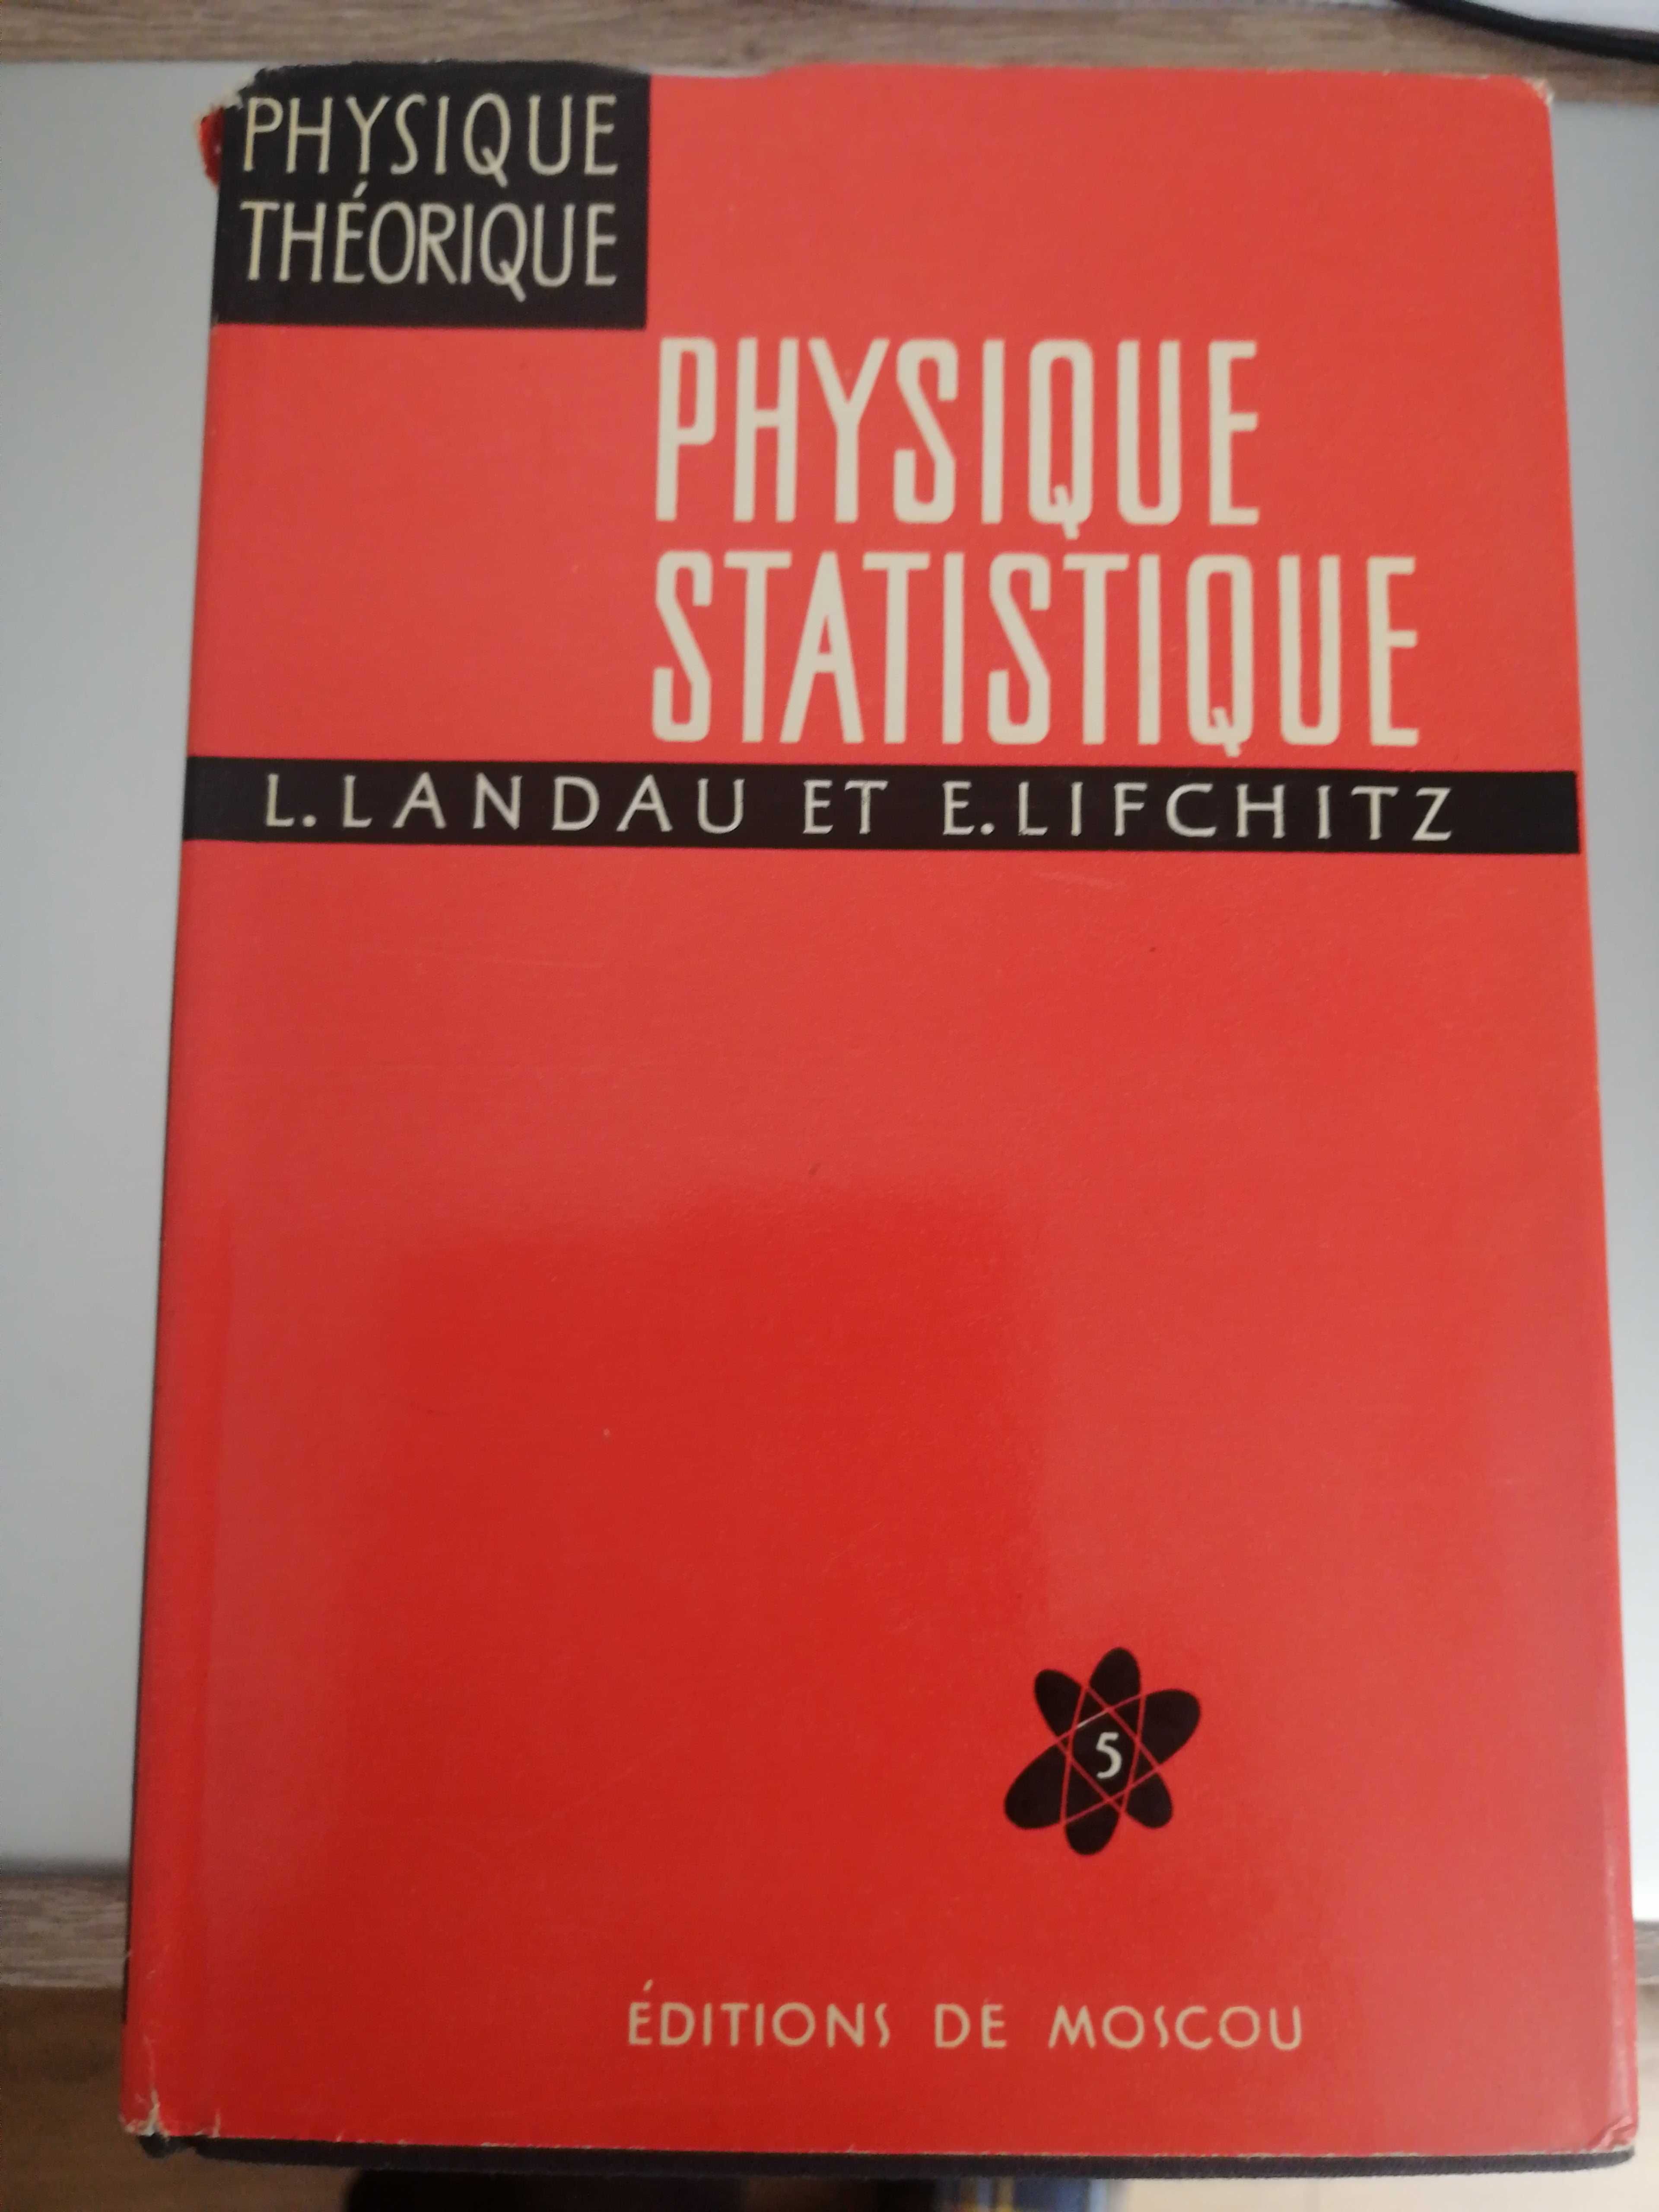 Landau et Lifchitz Physique theorique - 8 volume in limba franceza.